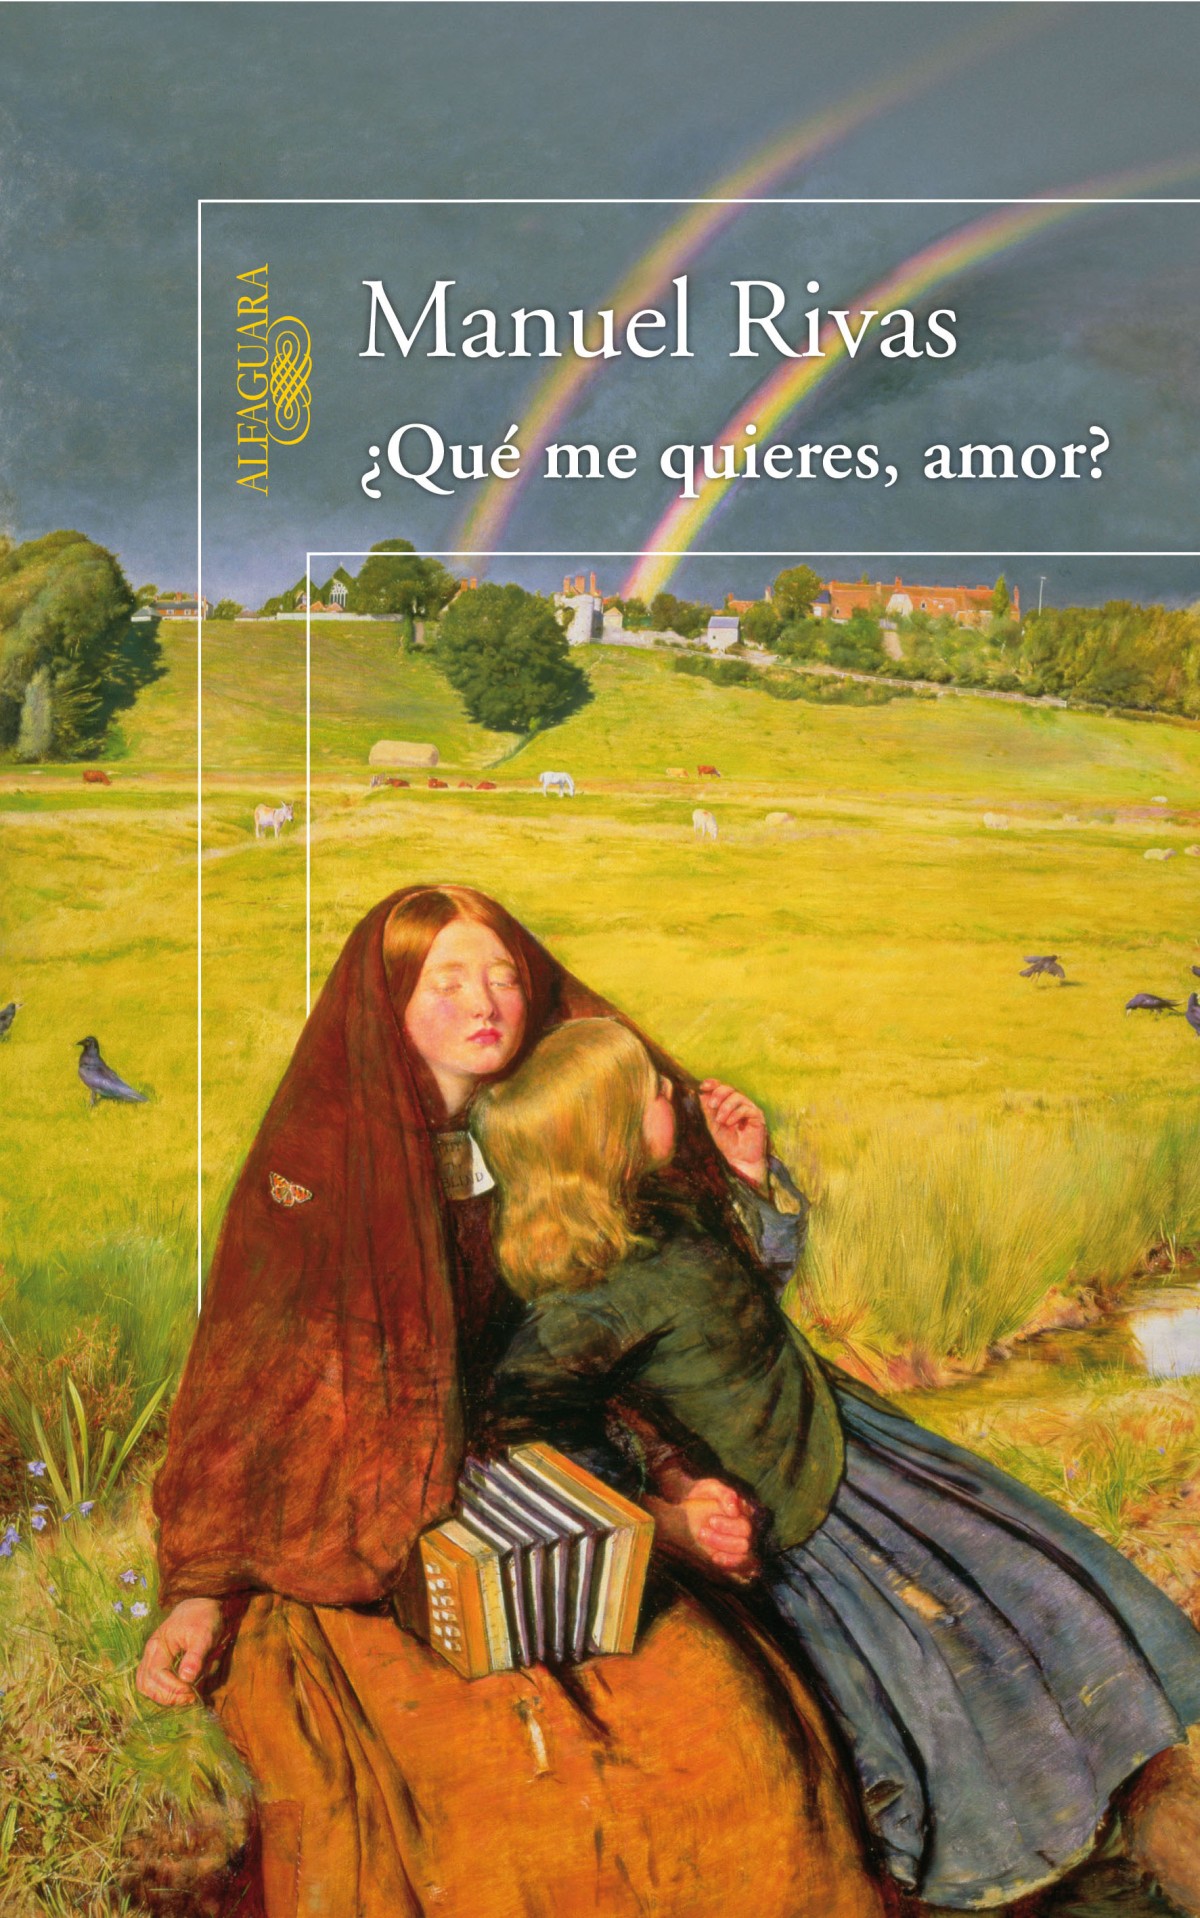 El libro nuestro de cada martes: ¿Qué me quieres amor?, de Manuel Rivas.